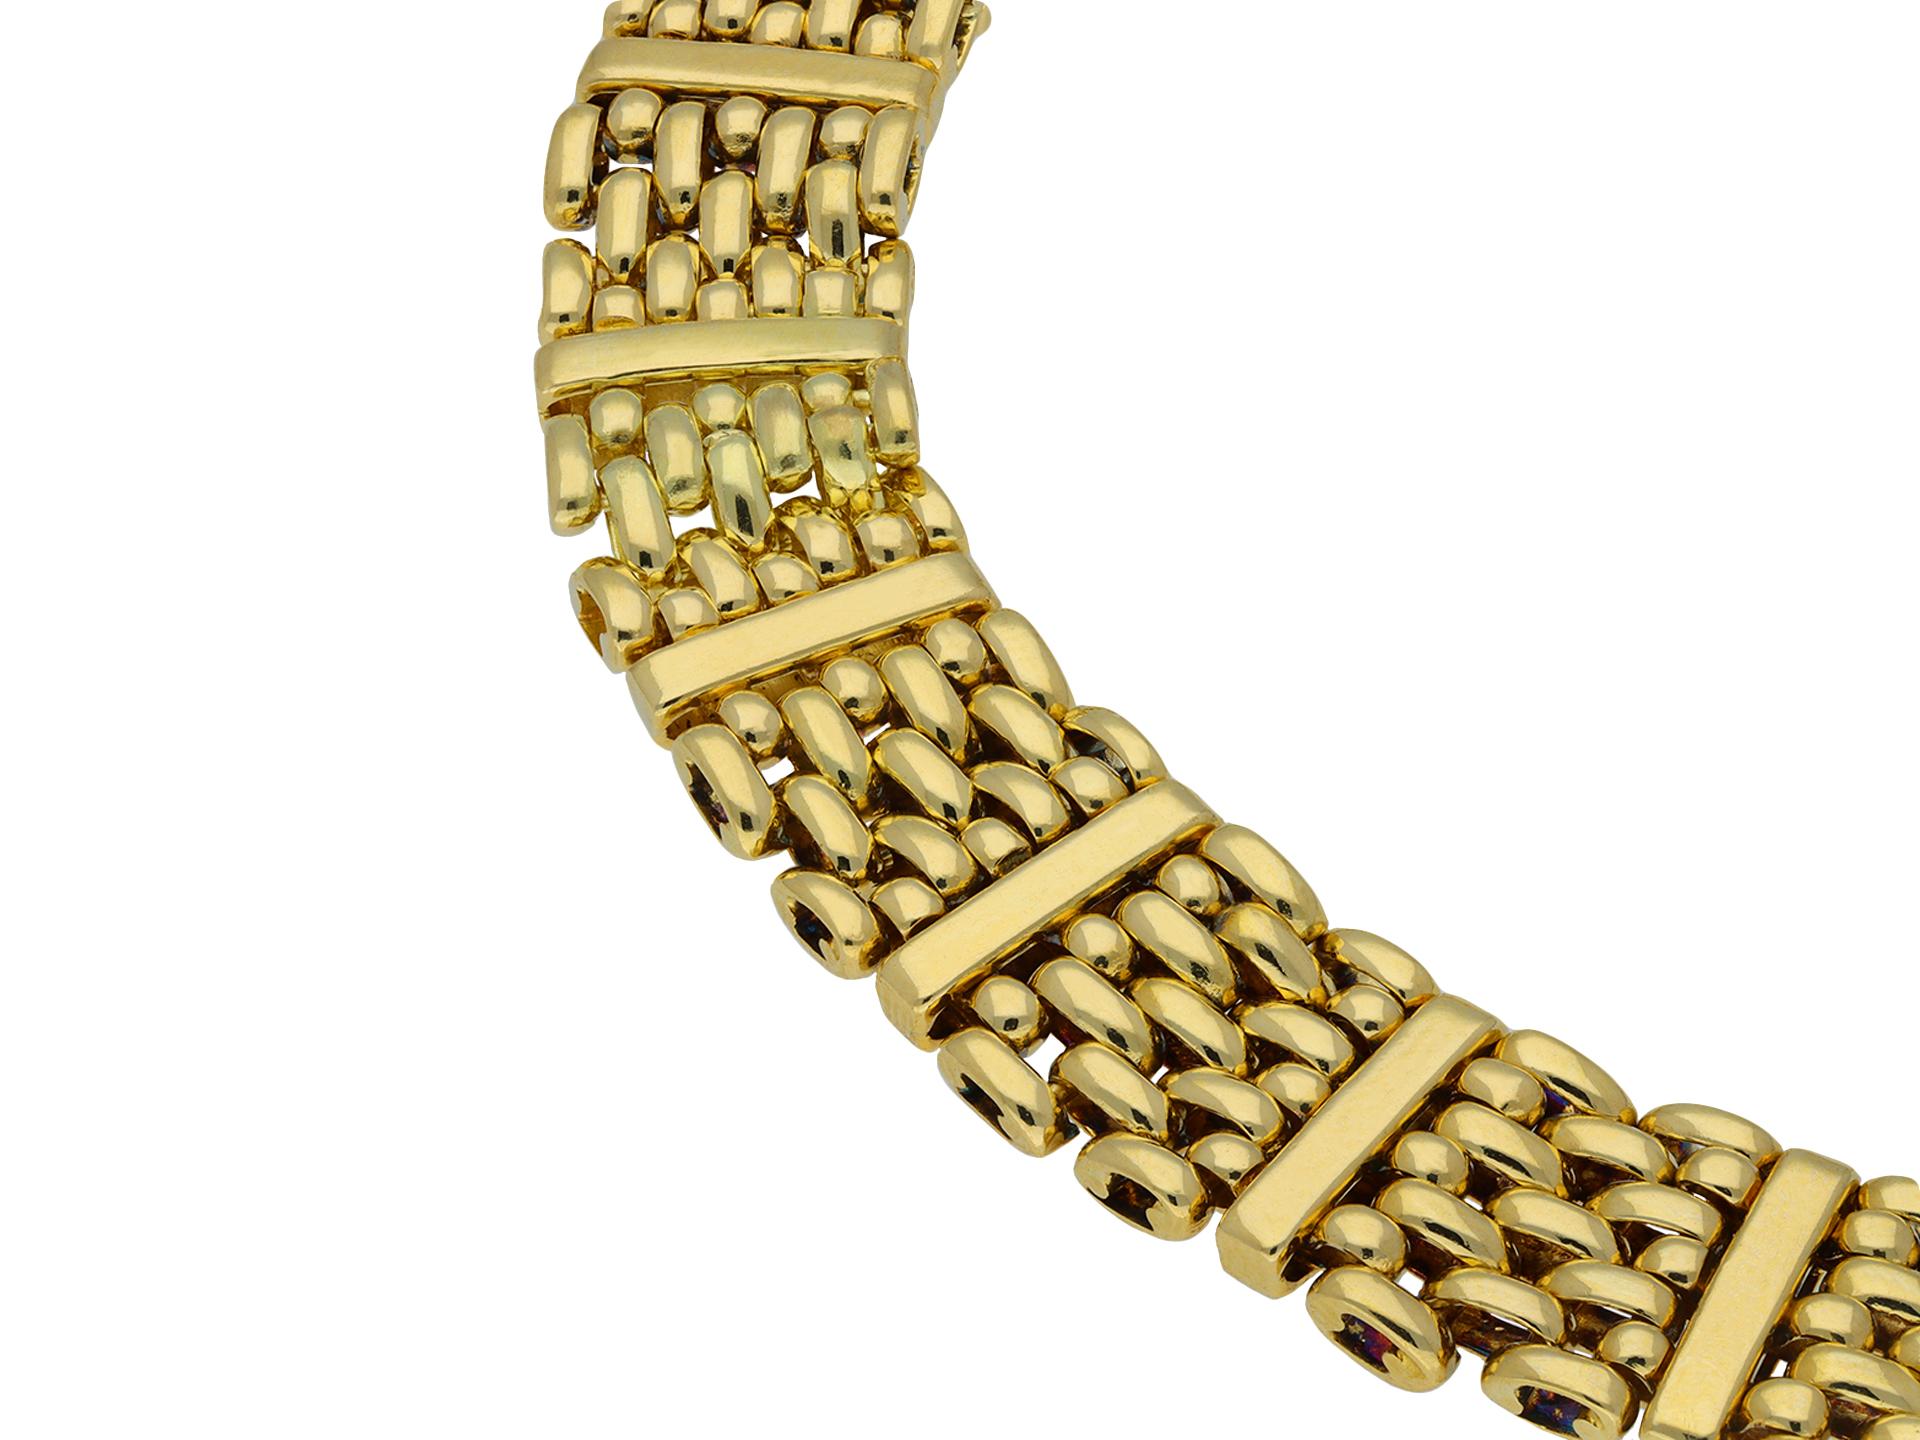 Van Cleef & Arpels Goldarmband. Ein Gelbgold-Gliederarmband, bestehend aus sechzehn Abschnitten mit sieben Reihen horizontaler röhrenförmiger geflochtener Glieder, durchsetzt mit einem vertikalen Gelbgoldsteg, fließend in der Bewegung und